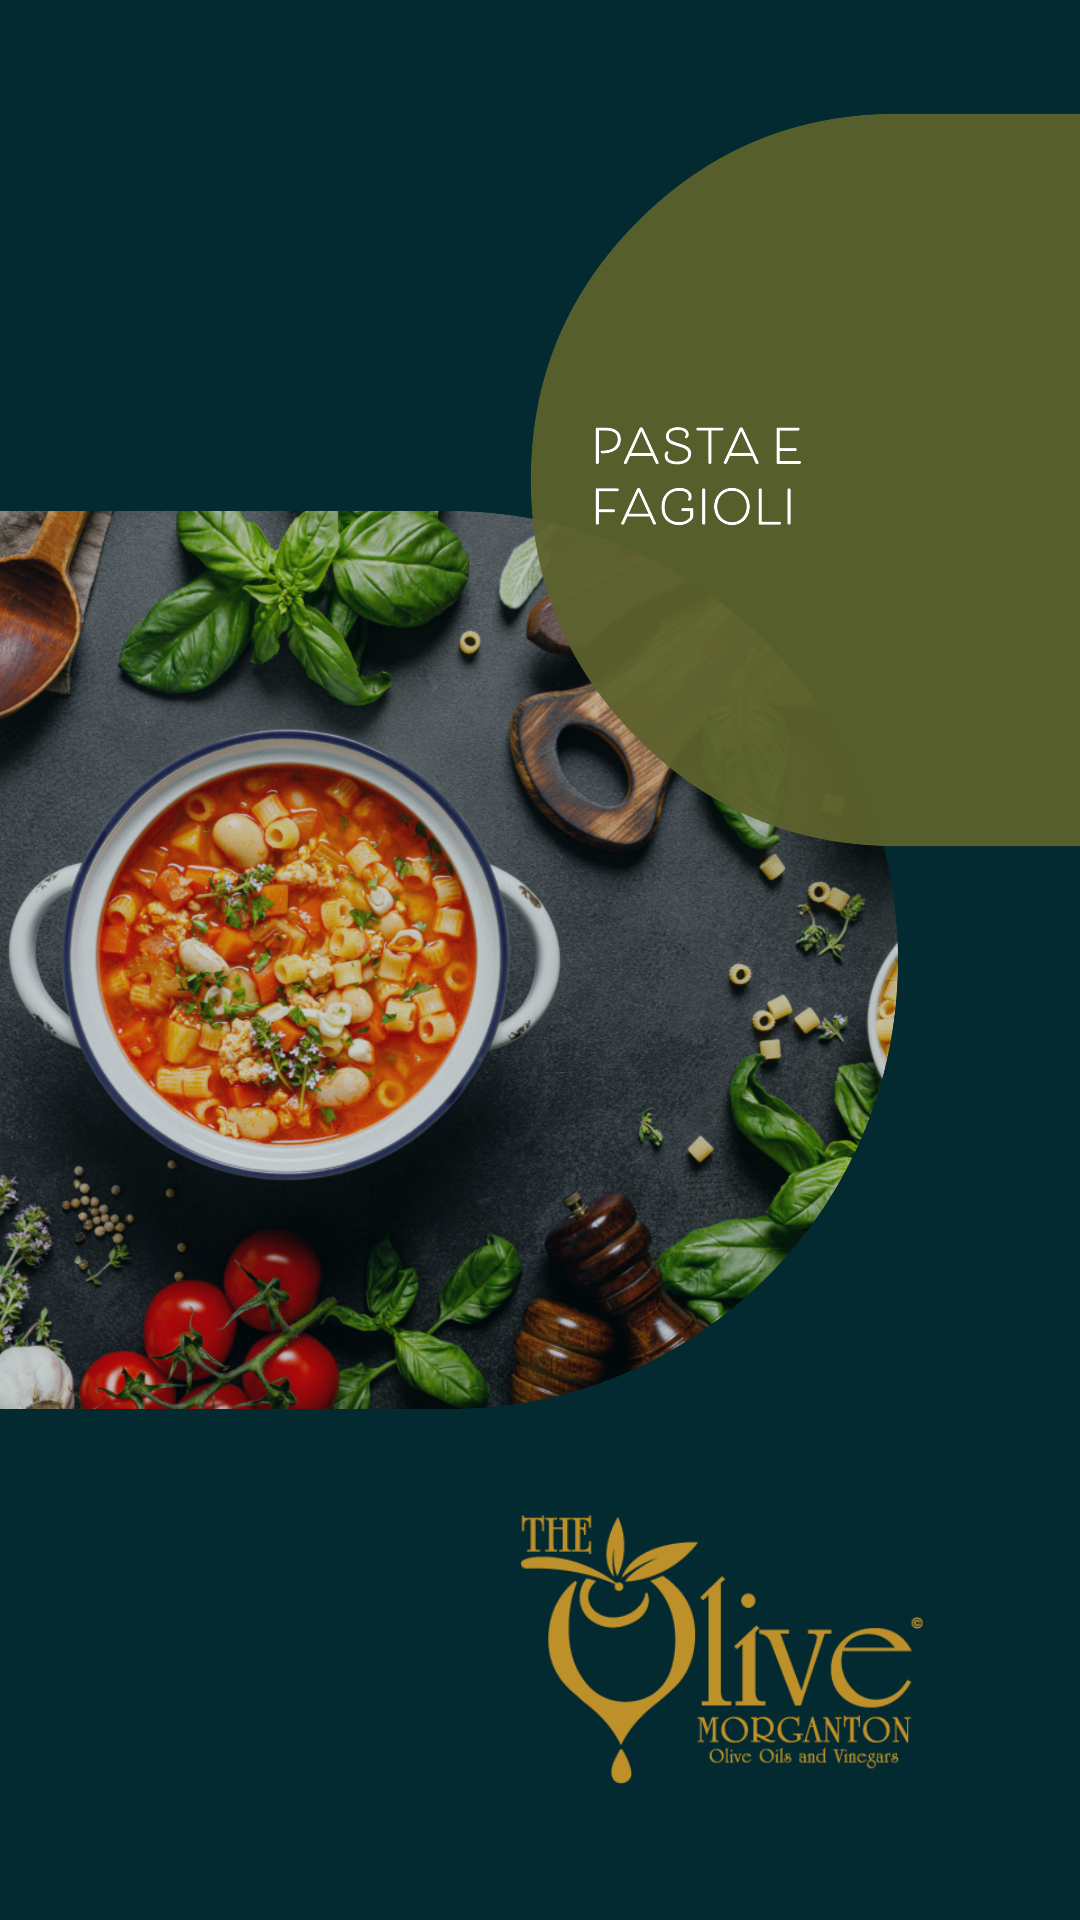 The Olive Pasta e Fagioli